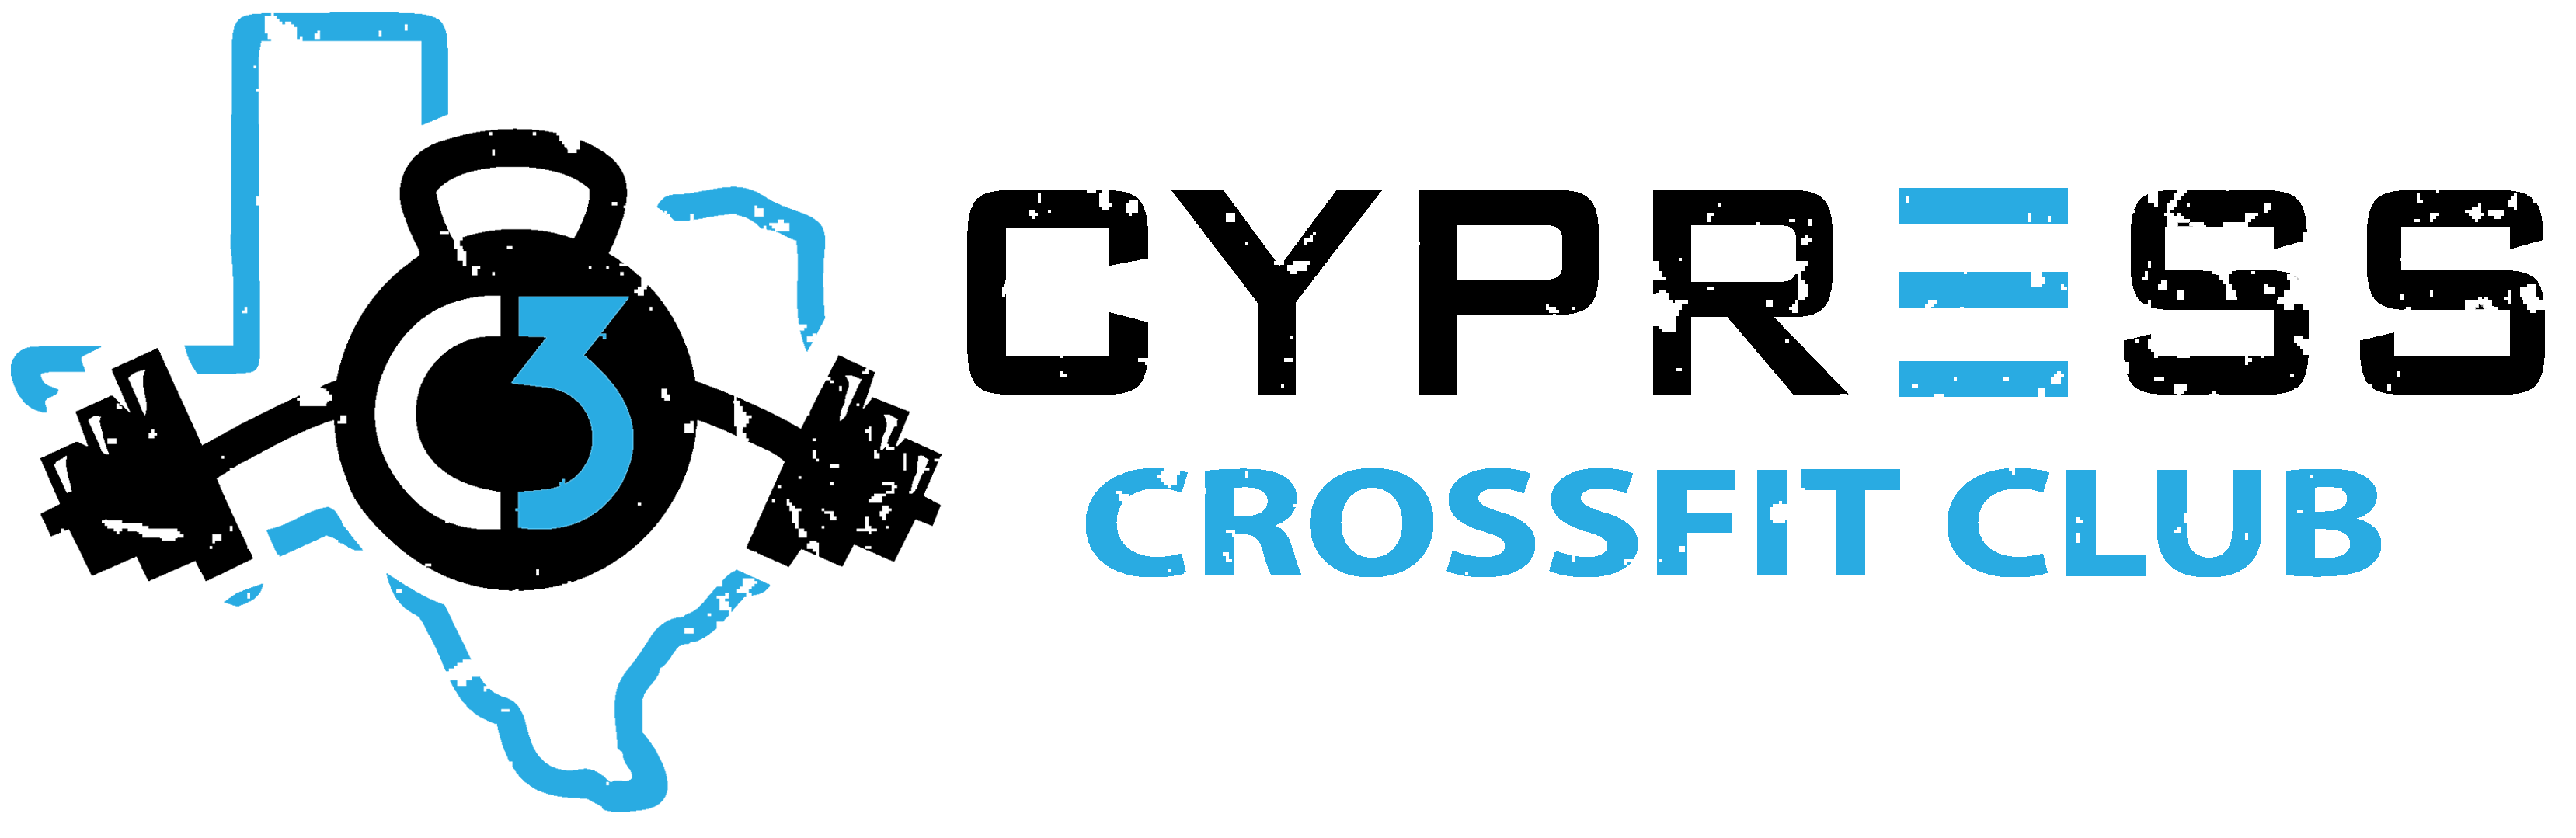 Cypress CrossFit Club